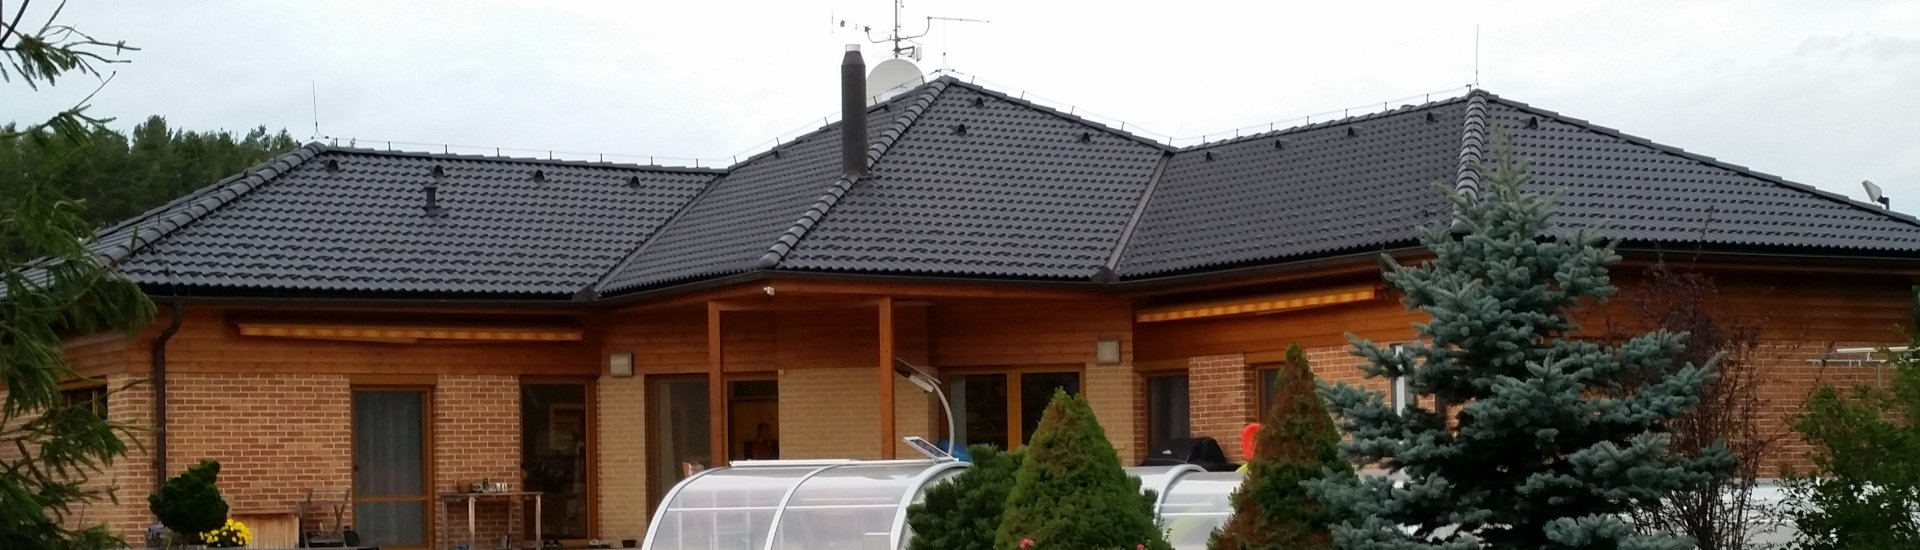 Nátěry střech a renovace - taškové střechy